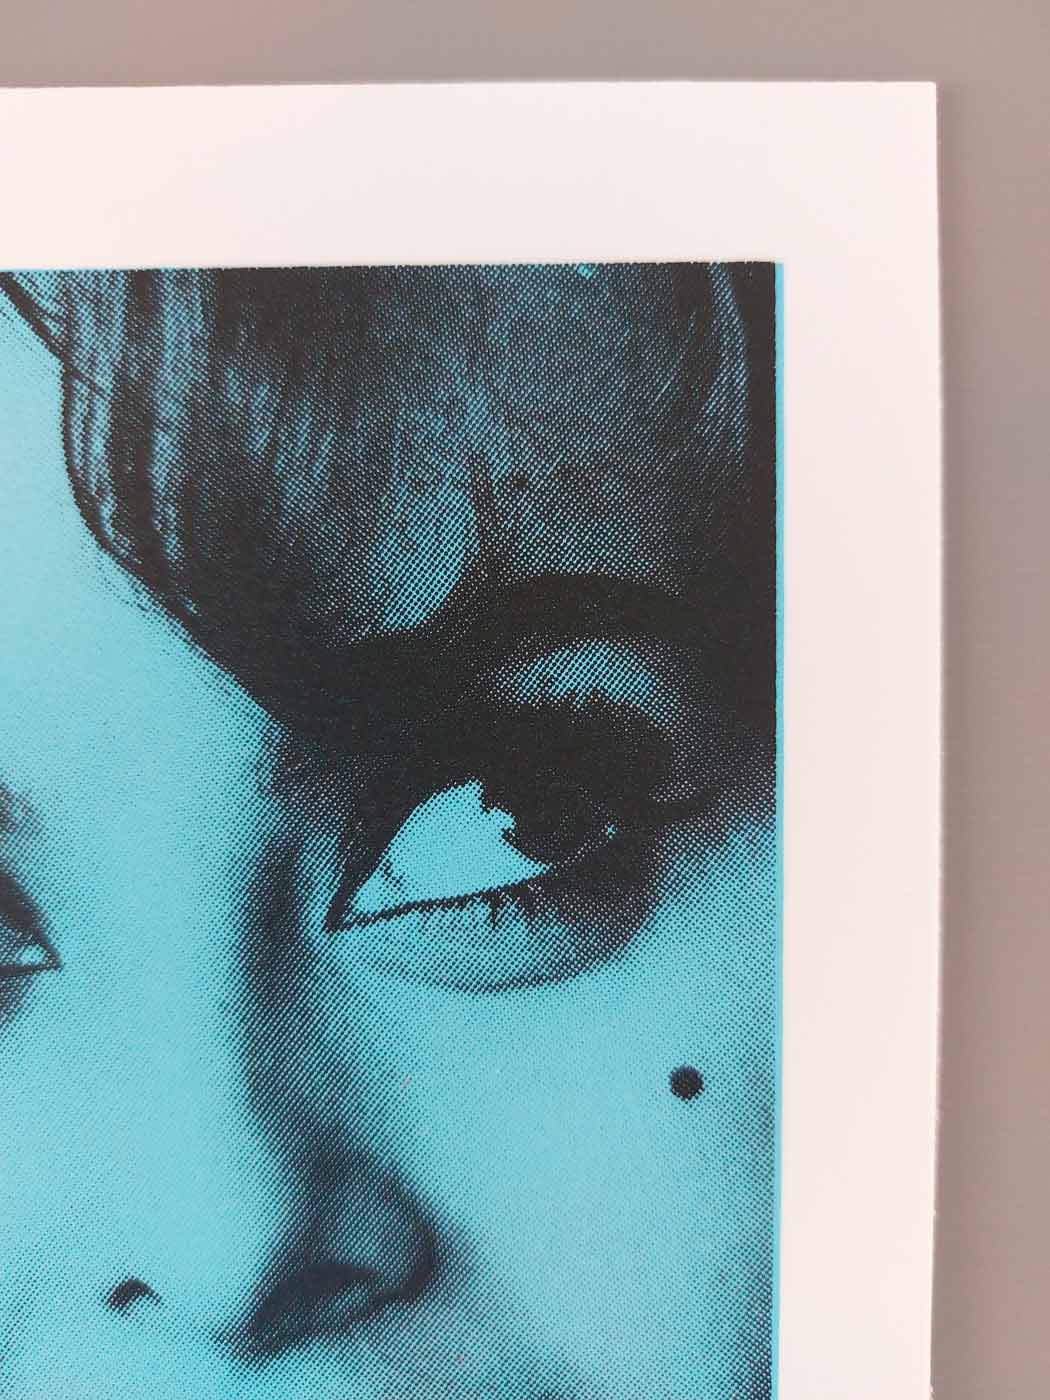 Sophia Loren - Blue Enlarged